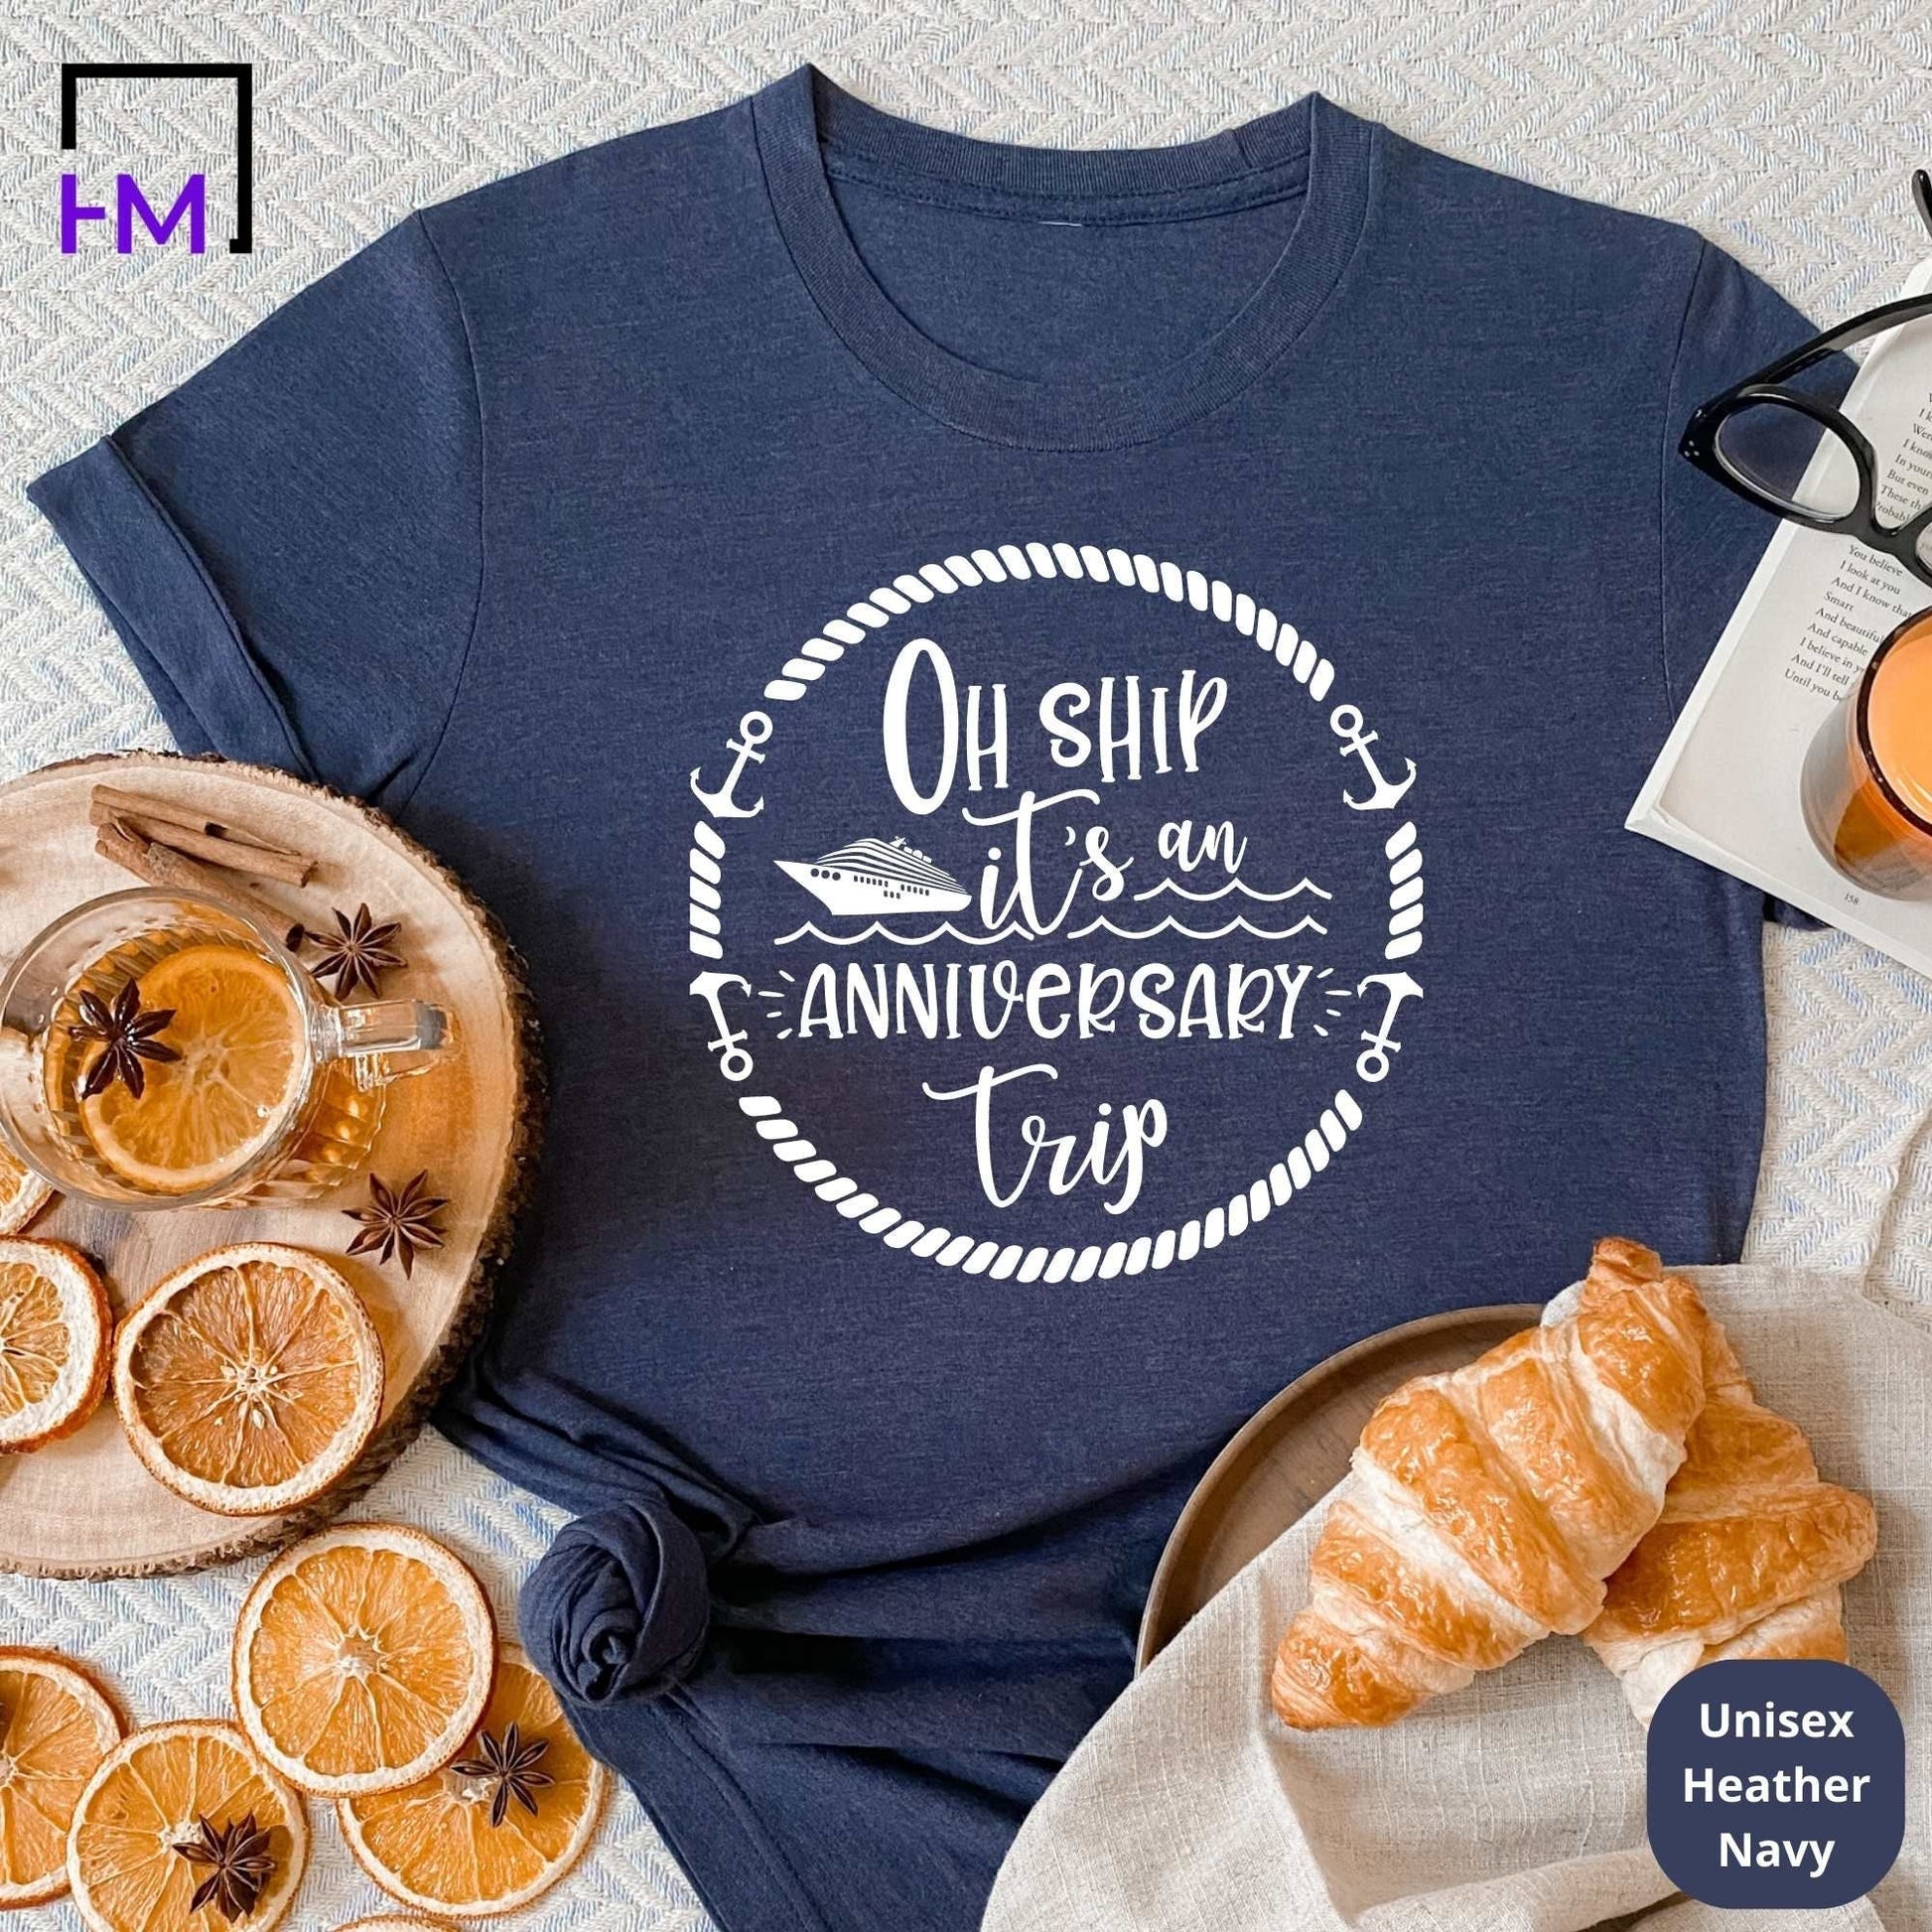 Anniversary Cruise T-Shirts HMDesignStudioUS